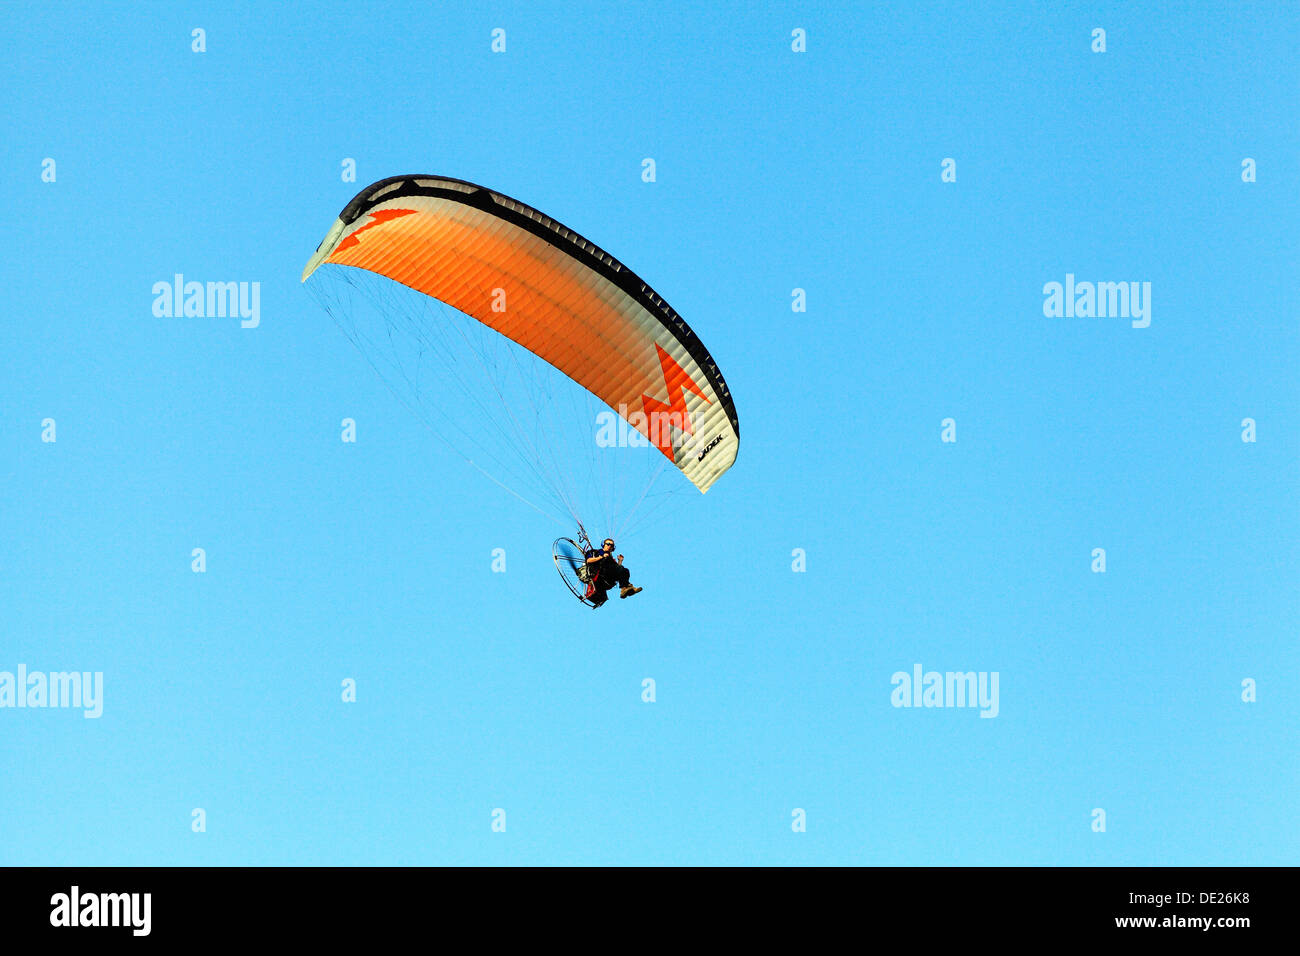 Deltaplano uomo deltaplano volare paracadute di attività per il tempo libero REGNO UNITO alianti paracadute Foto Stock